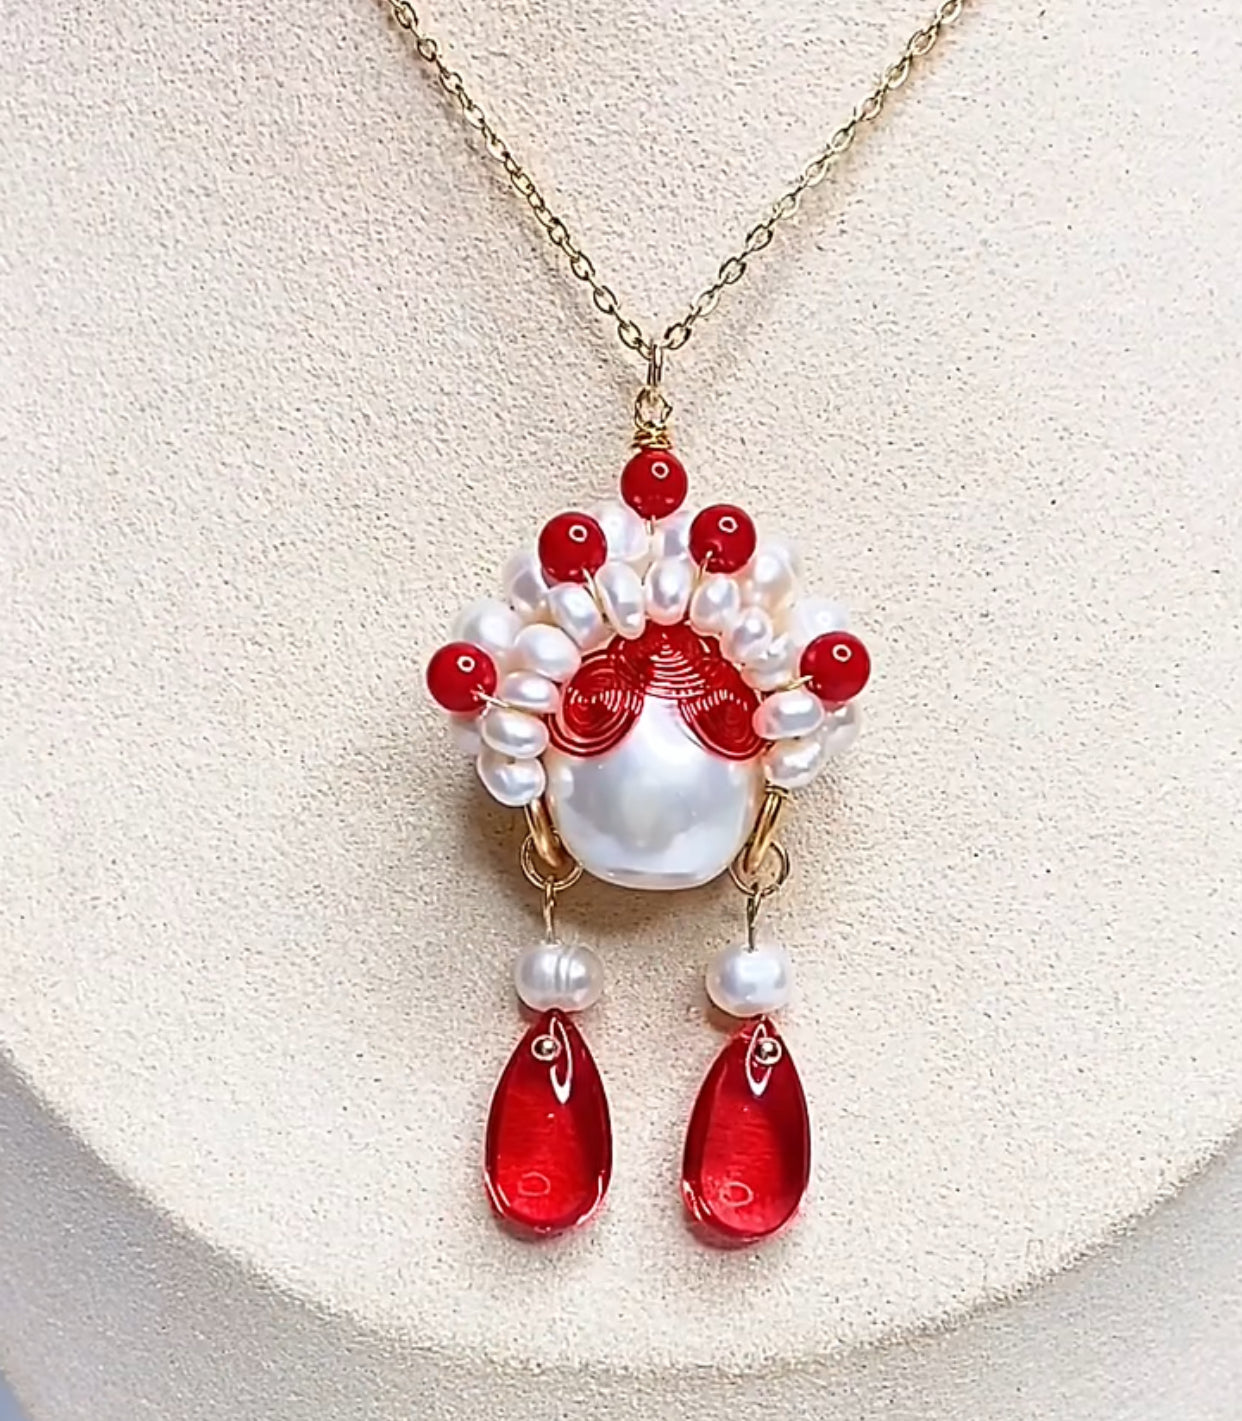 Handmade custom fancy jewelry earrings necklace bracelet Peking Opera personalized accessories - Duo Fashion